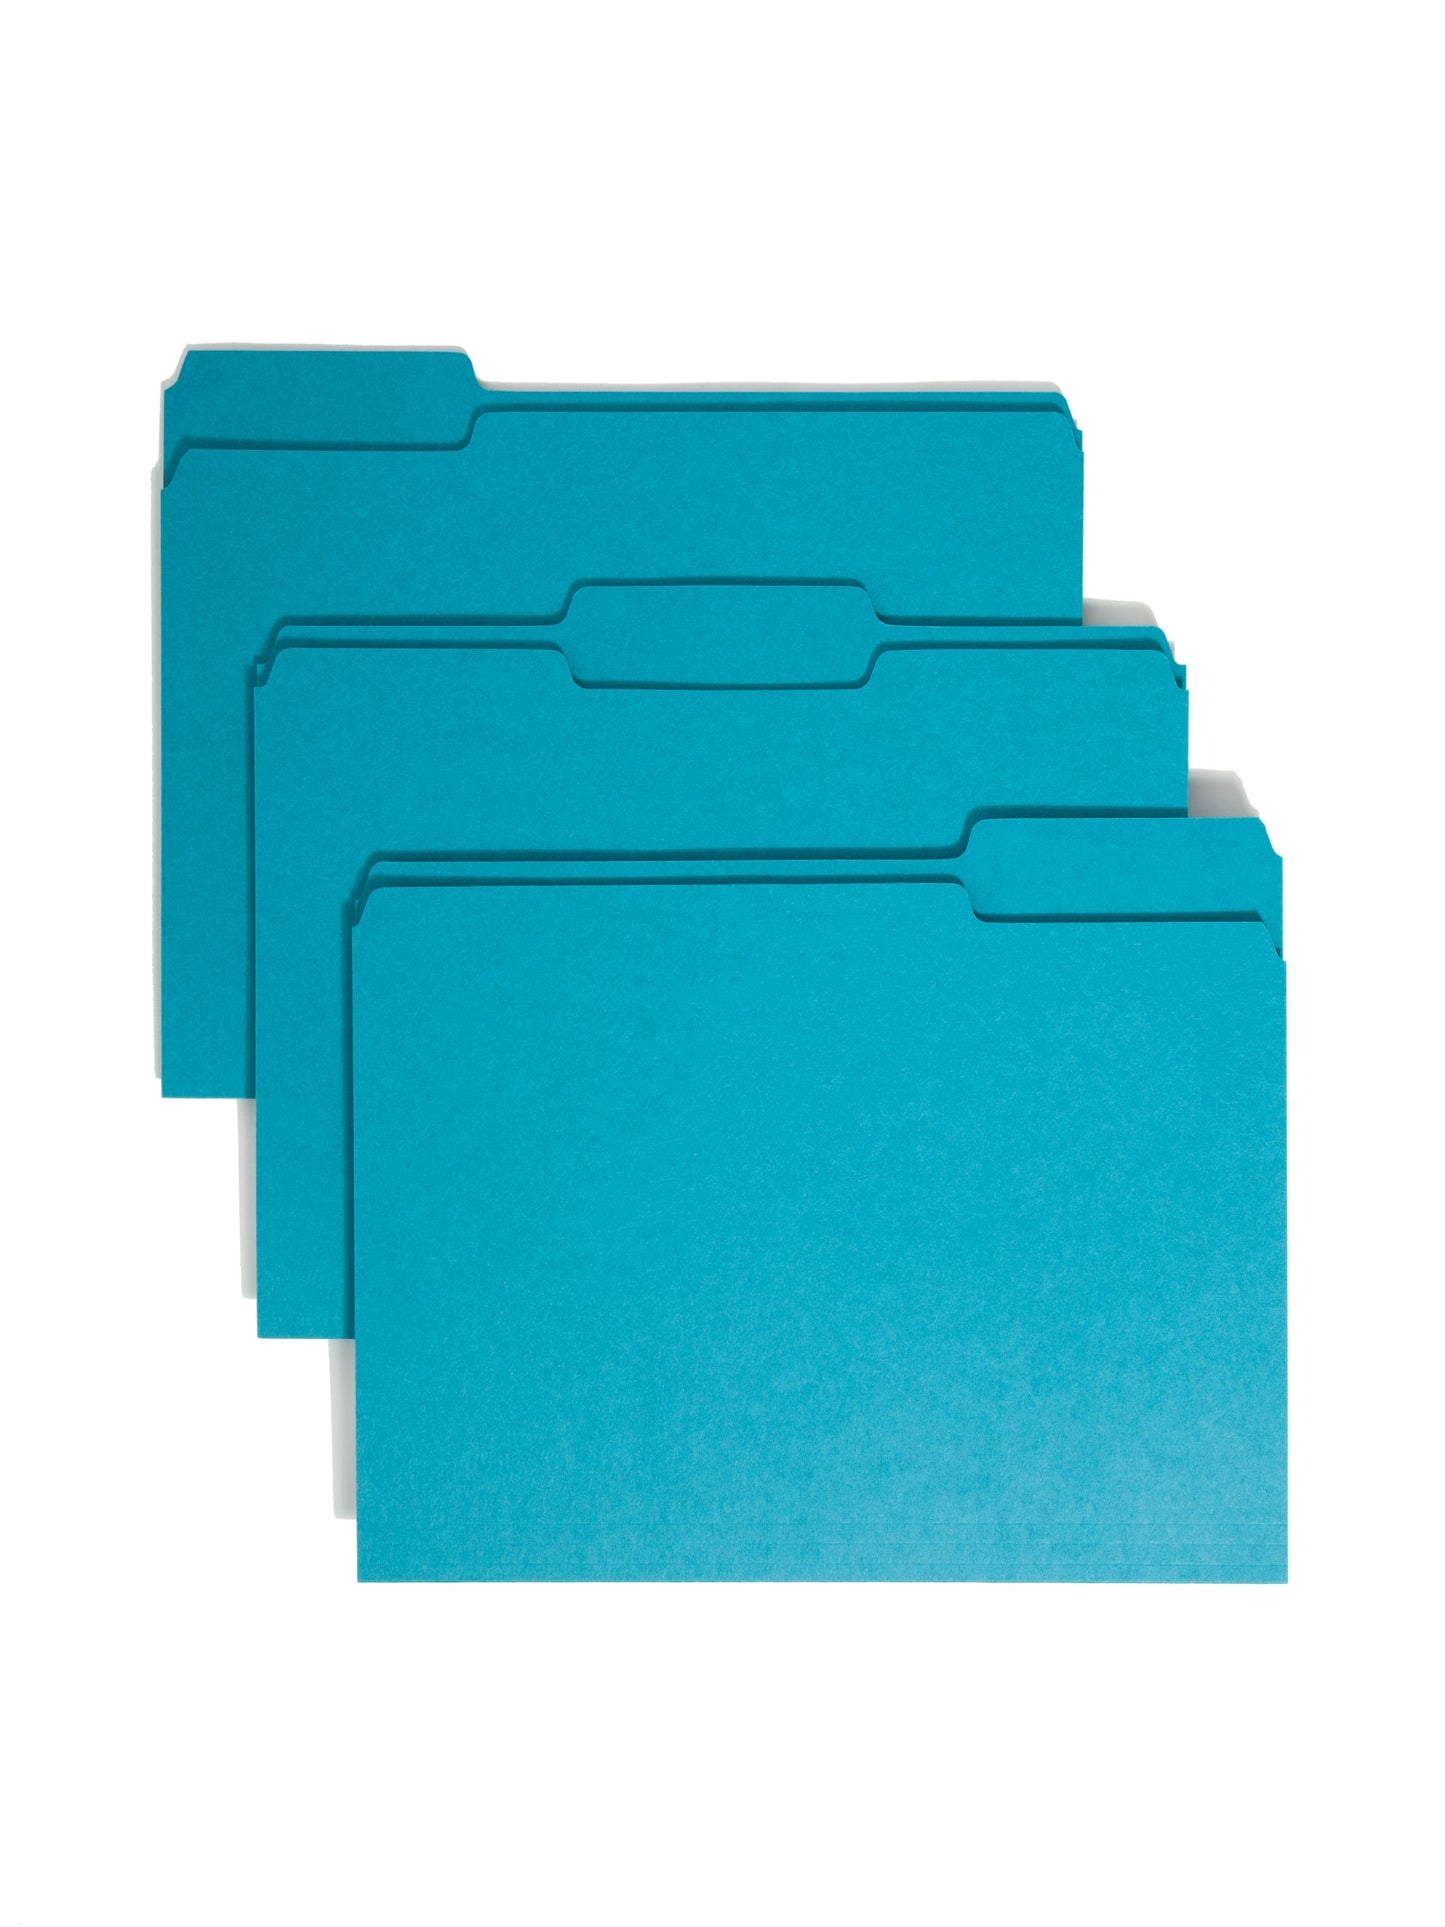 Standard File Folders, 1/3-Cut Tab, Teal Color, Letter Size, Set of 100, 086486131438